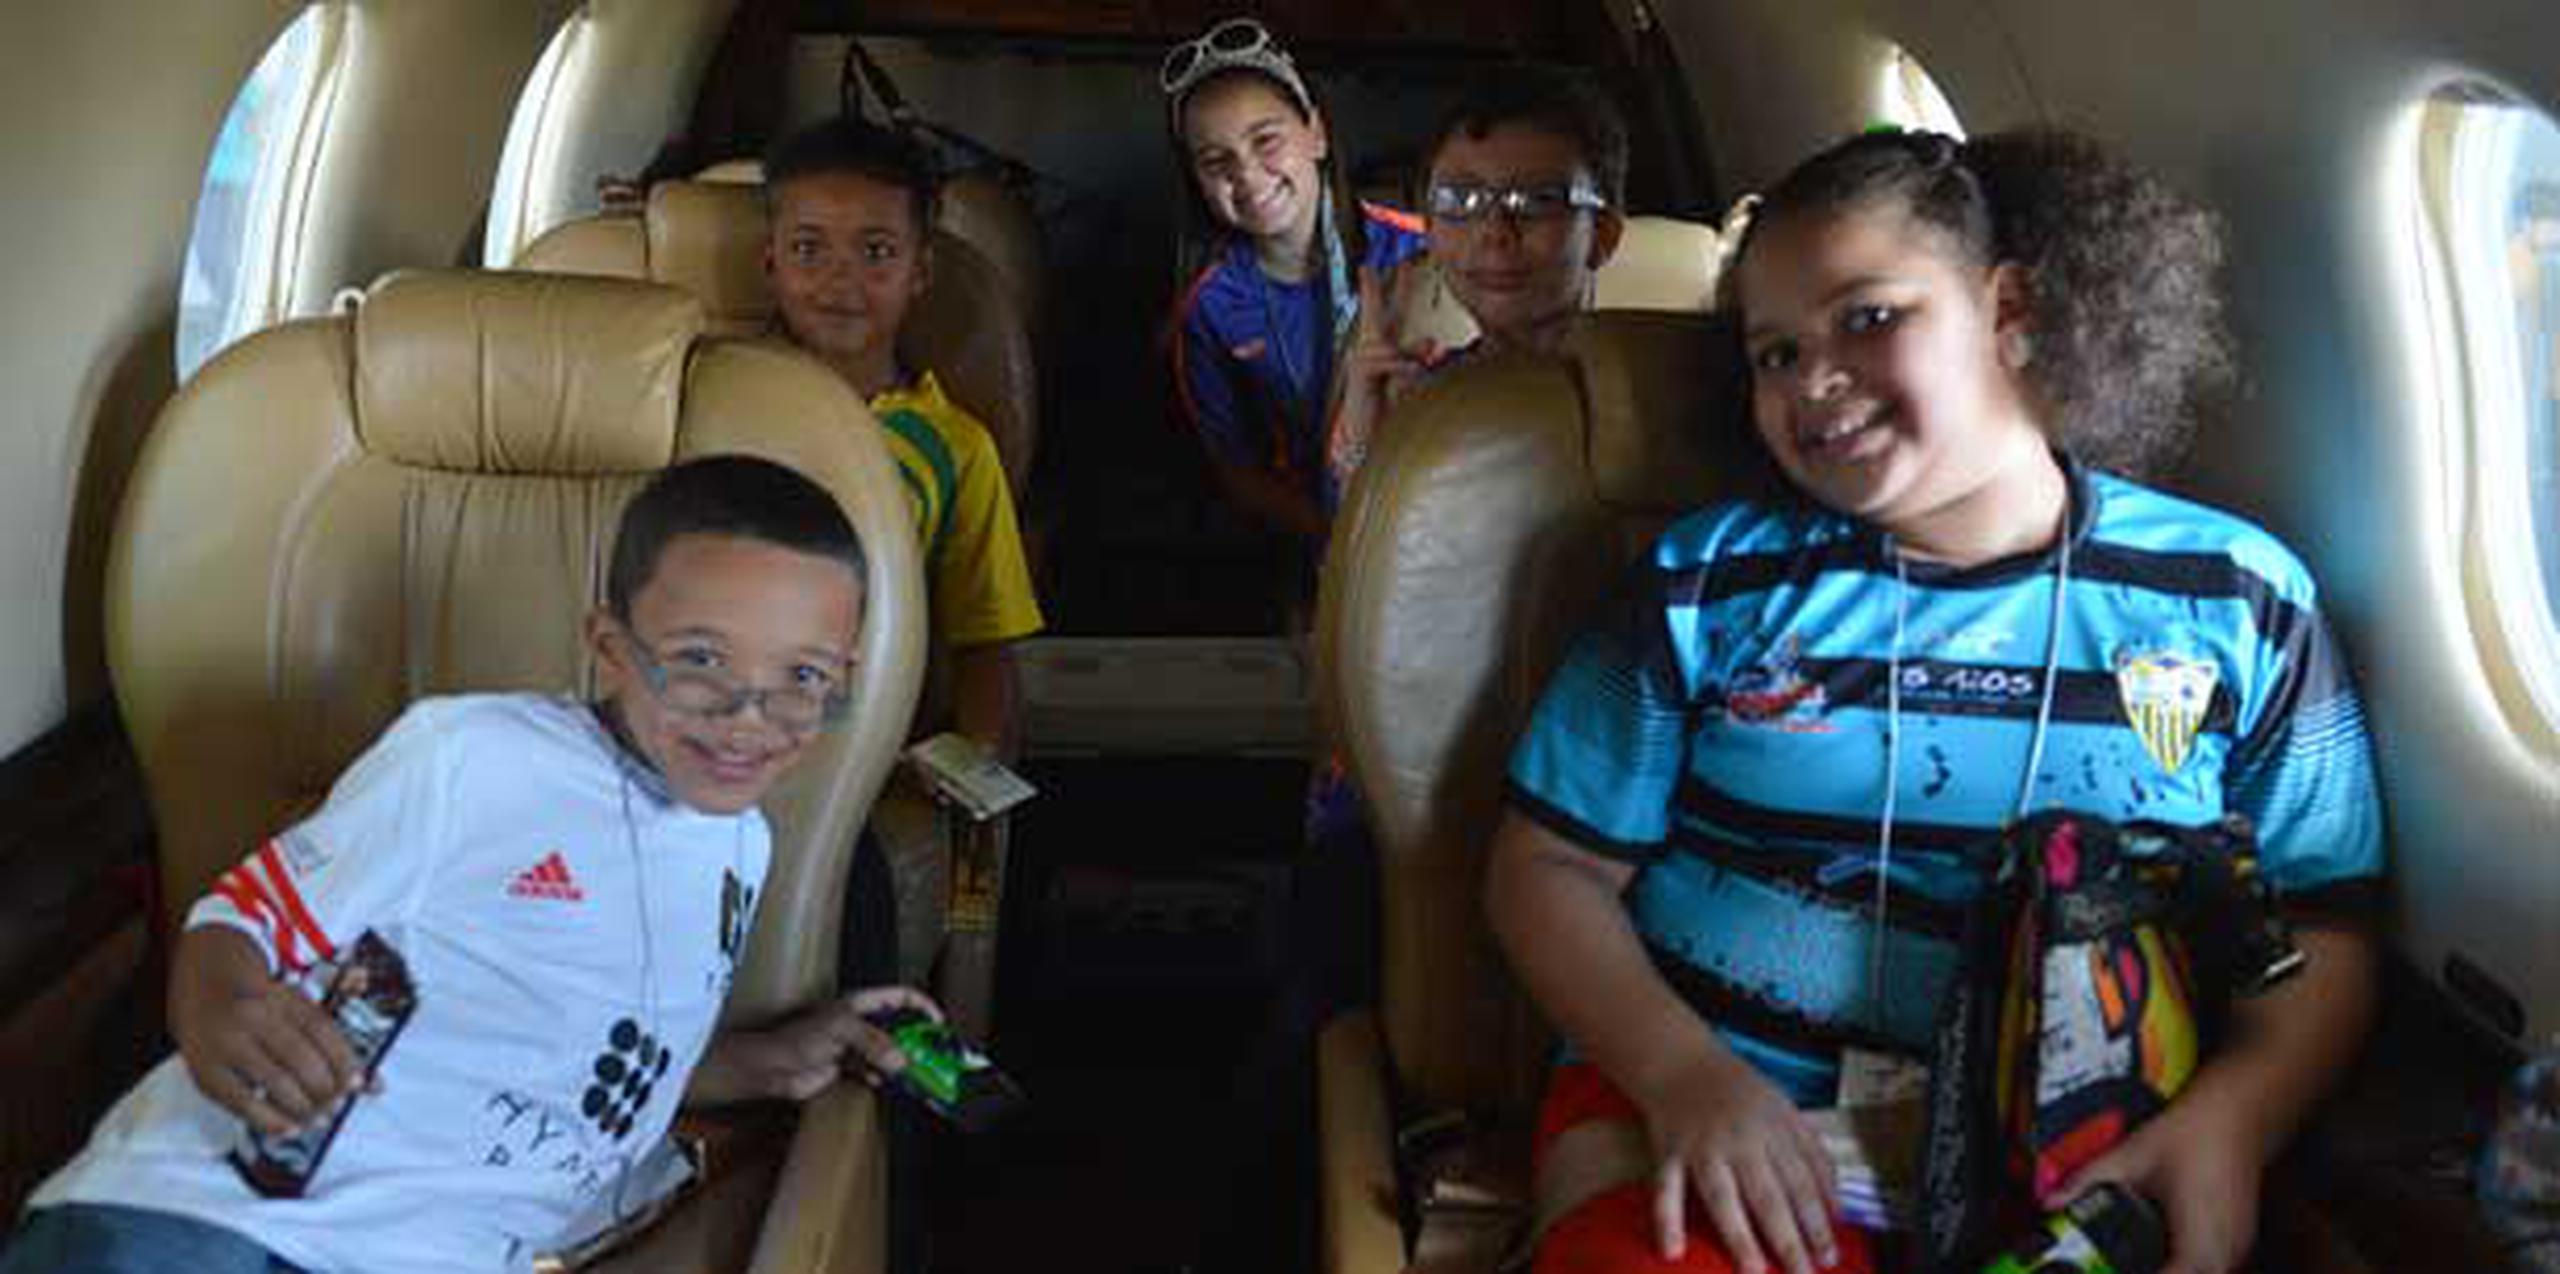 Además del vuelo y los regalos, los niños disfrutaron toda una mañana de diversión. (jrodriguez.1@gfrmedia.com)